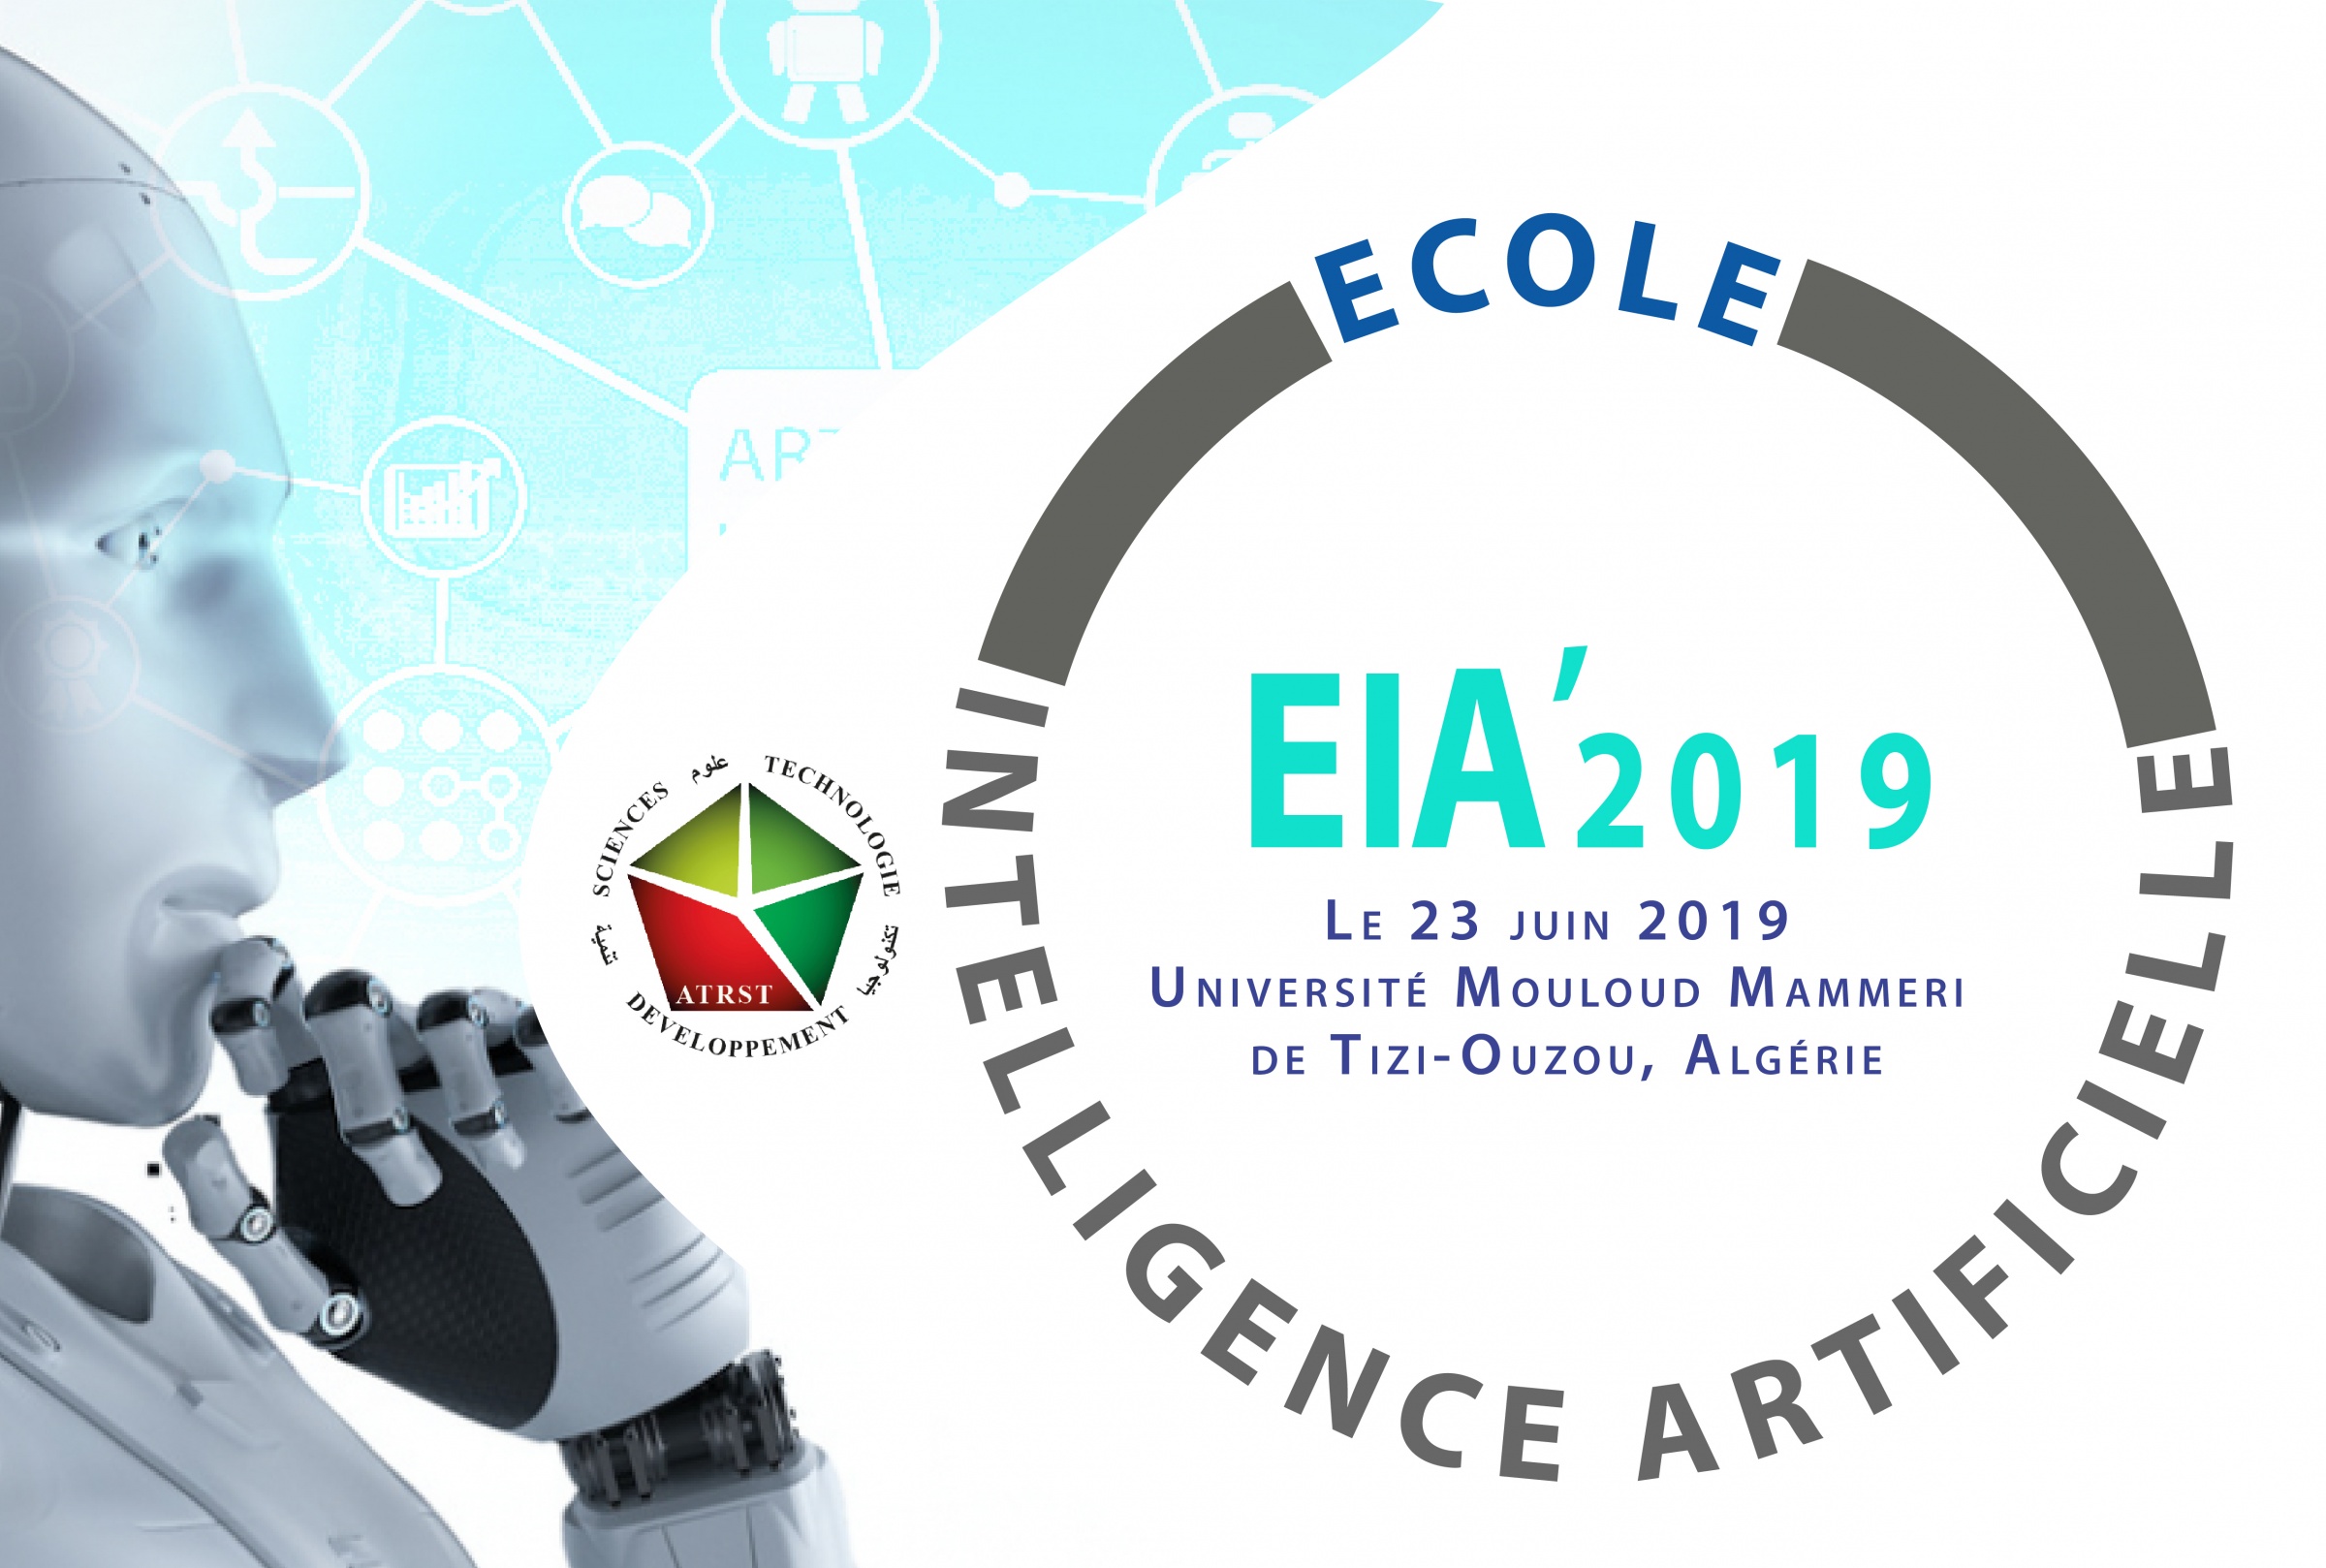 Ecole Intelligence Artificielle, le 23 juin 2019 à l’Université de tizi-ouzou